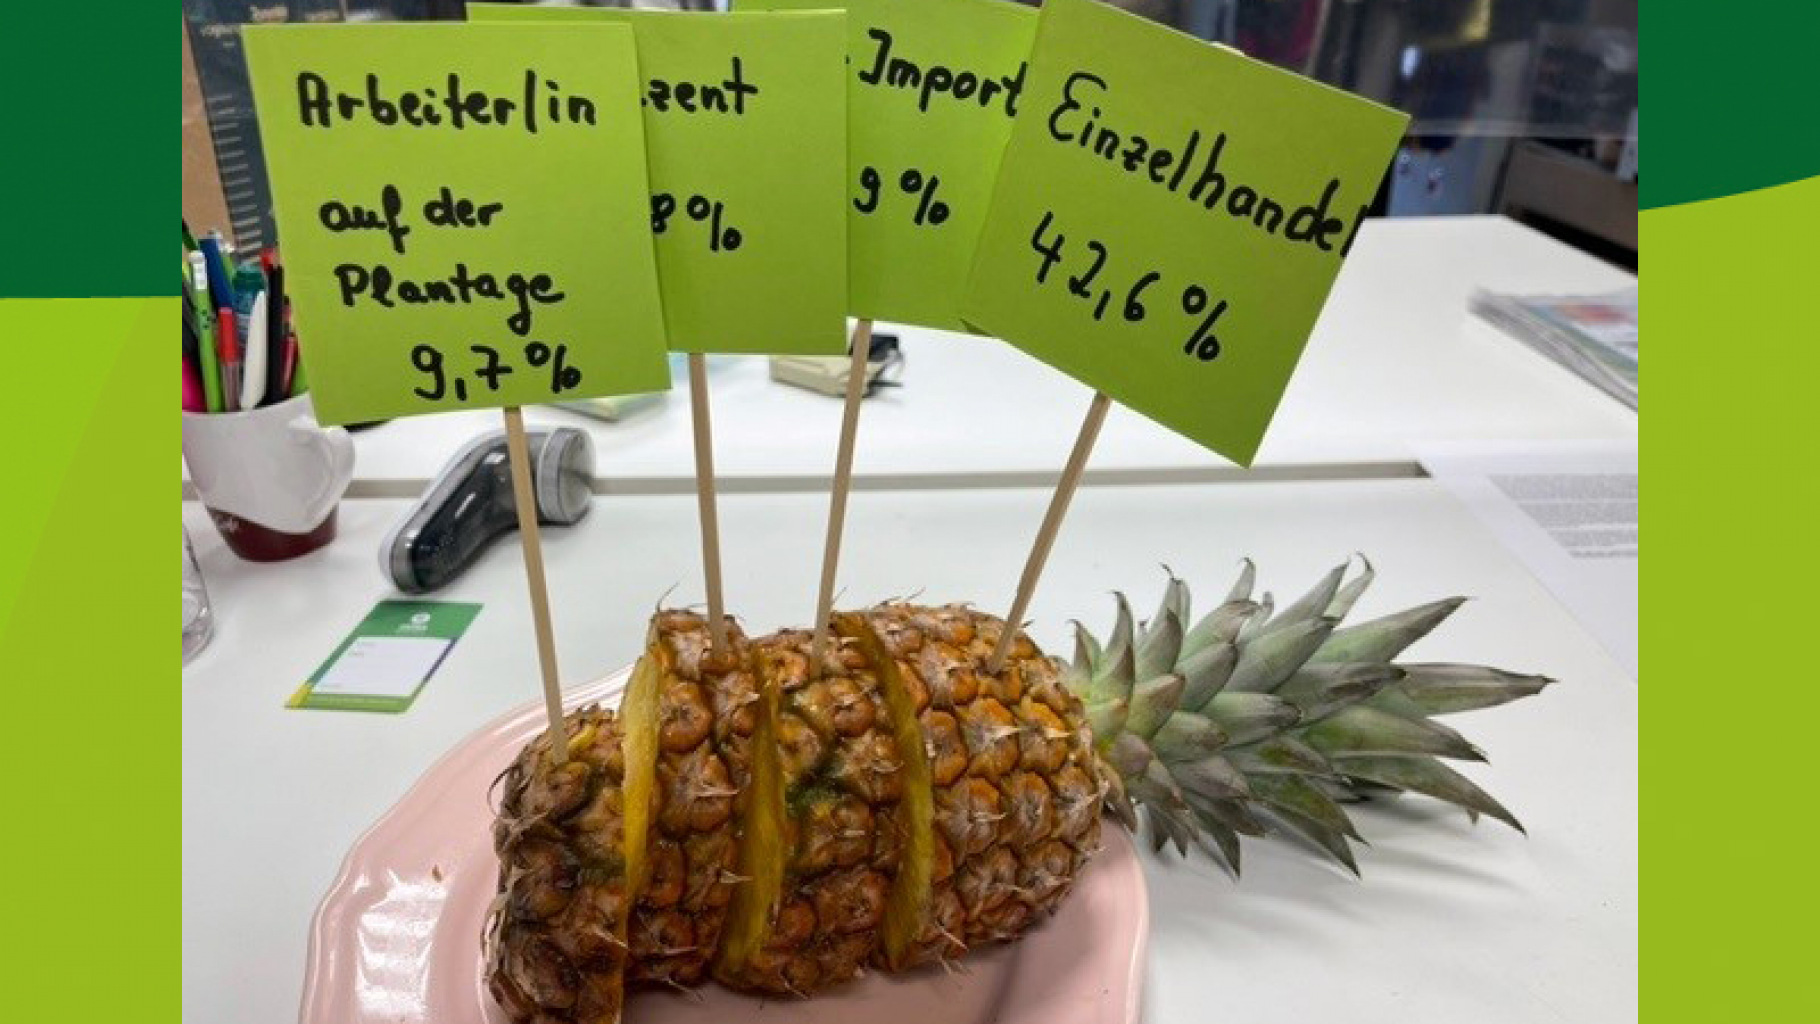 Wer verdient an der Ananas? Ehrenamtliche aus dem Oxfam Shop Bielefeld haben das mit einer echten Ananas veranschaulicht.